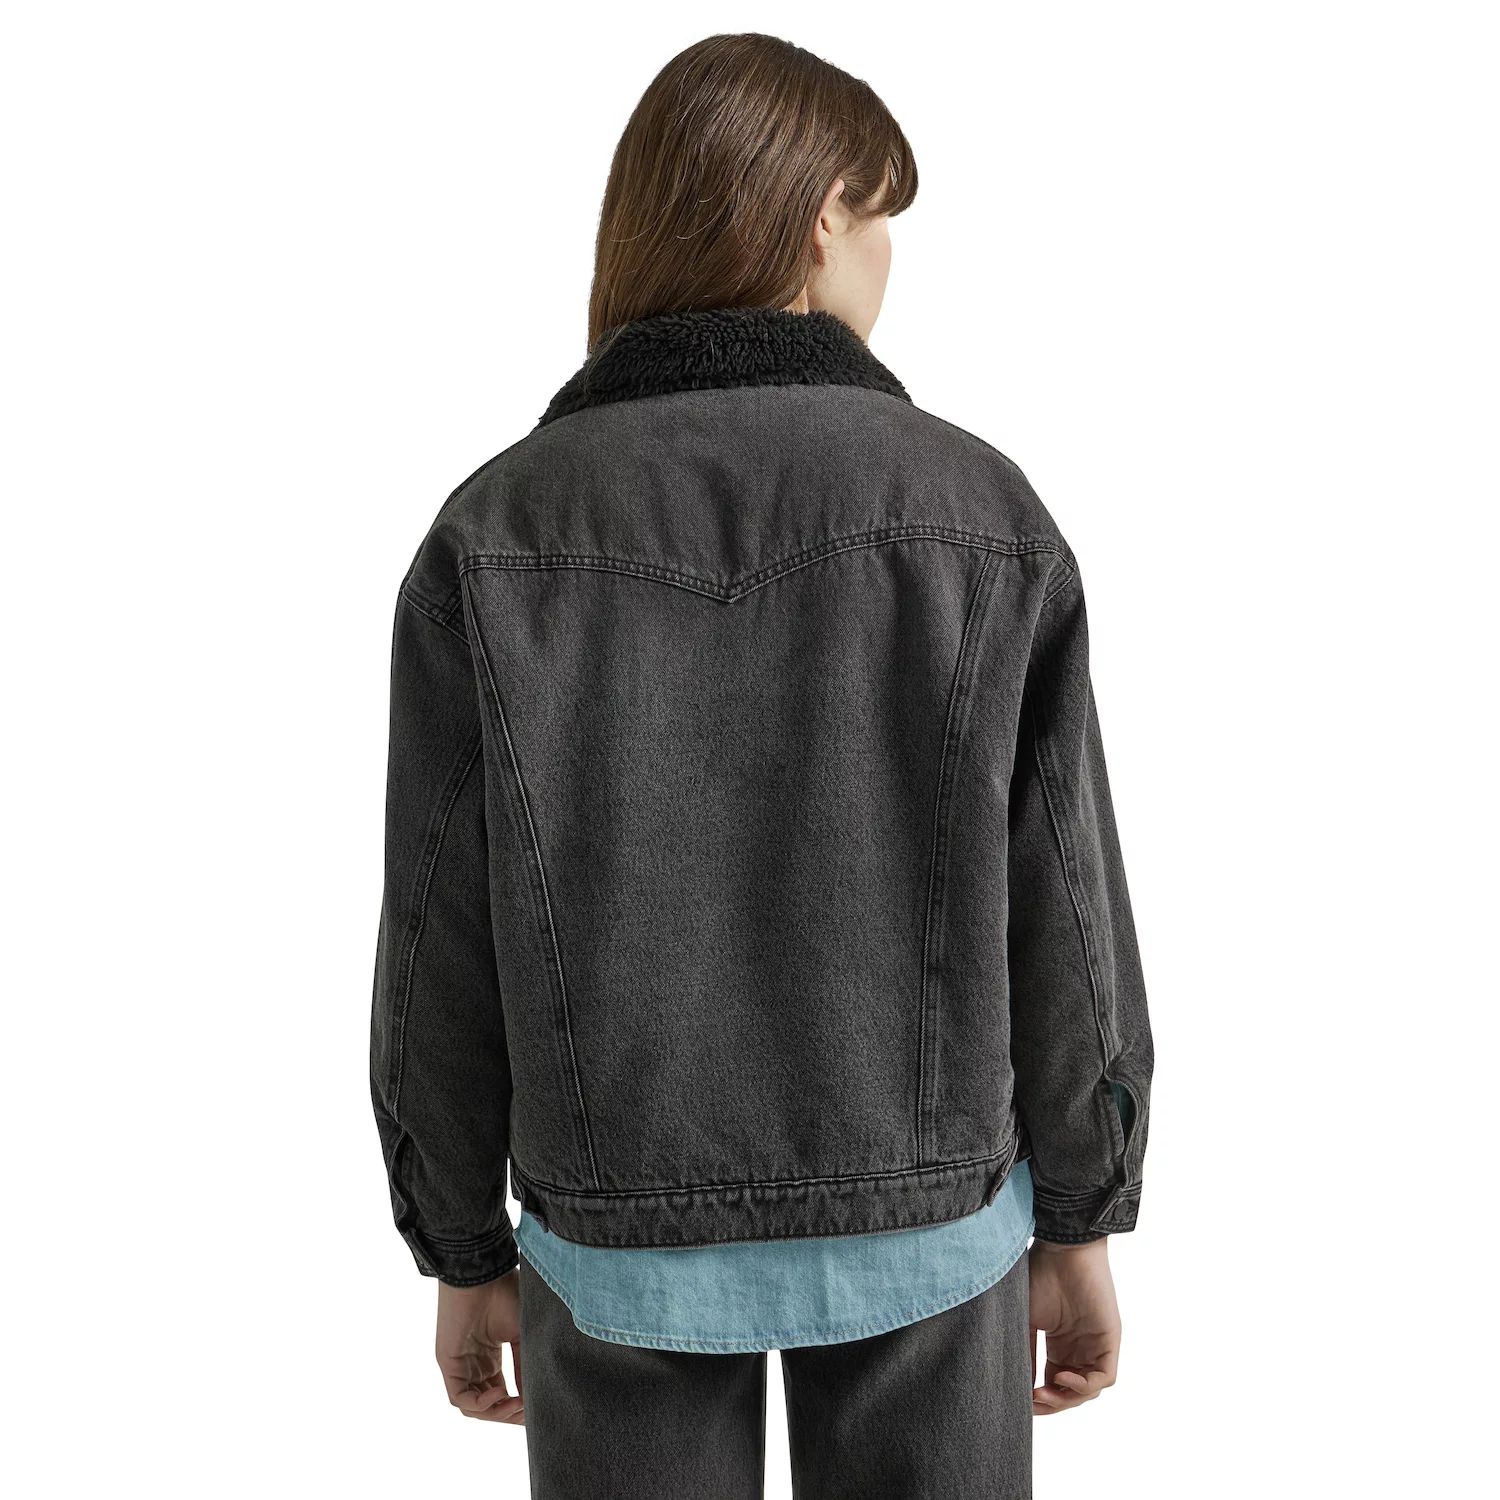 джинсовая куртка wrangler размер l бежевый Женская джинсовая куртка Wrangler Girlfriend Wrangler